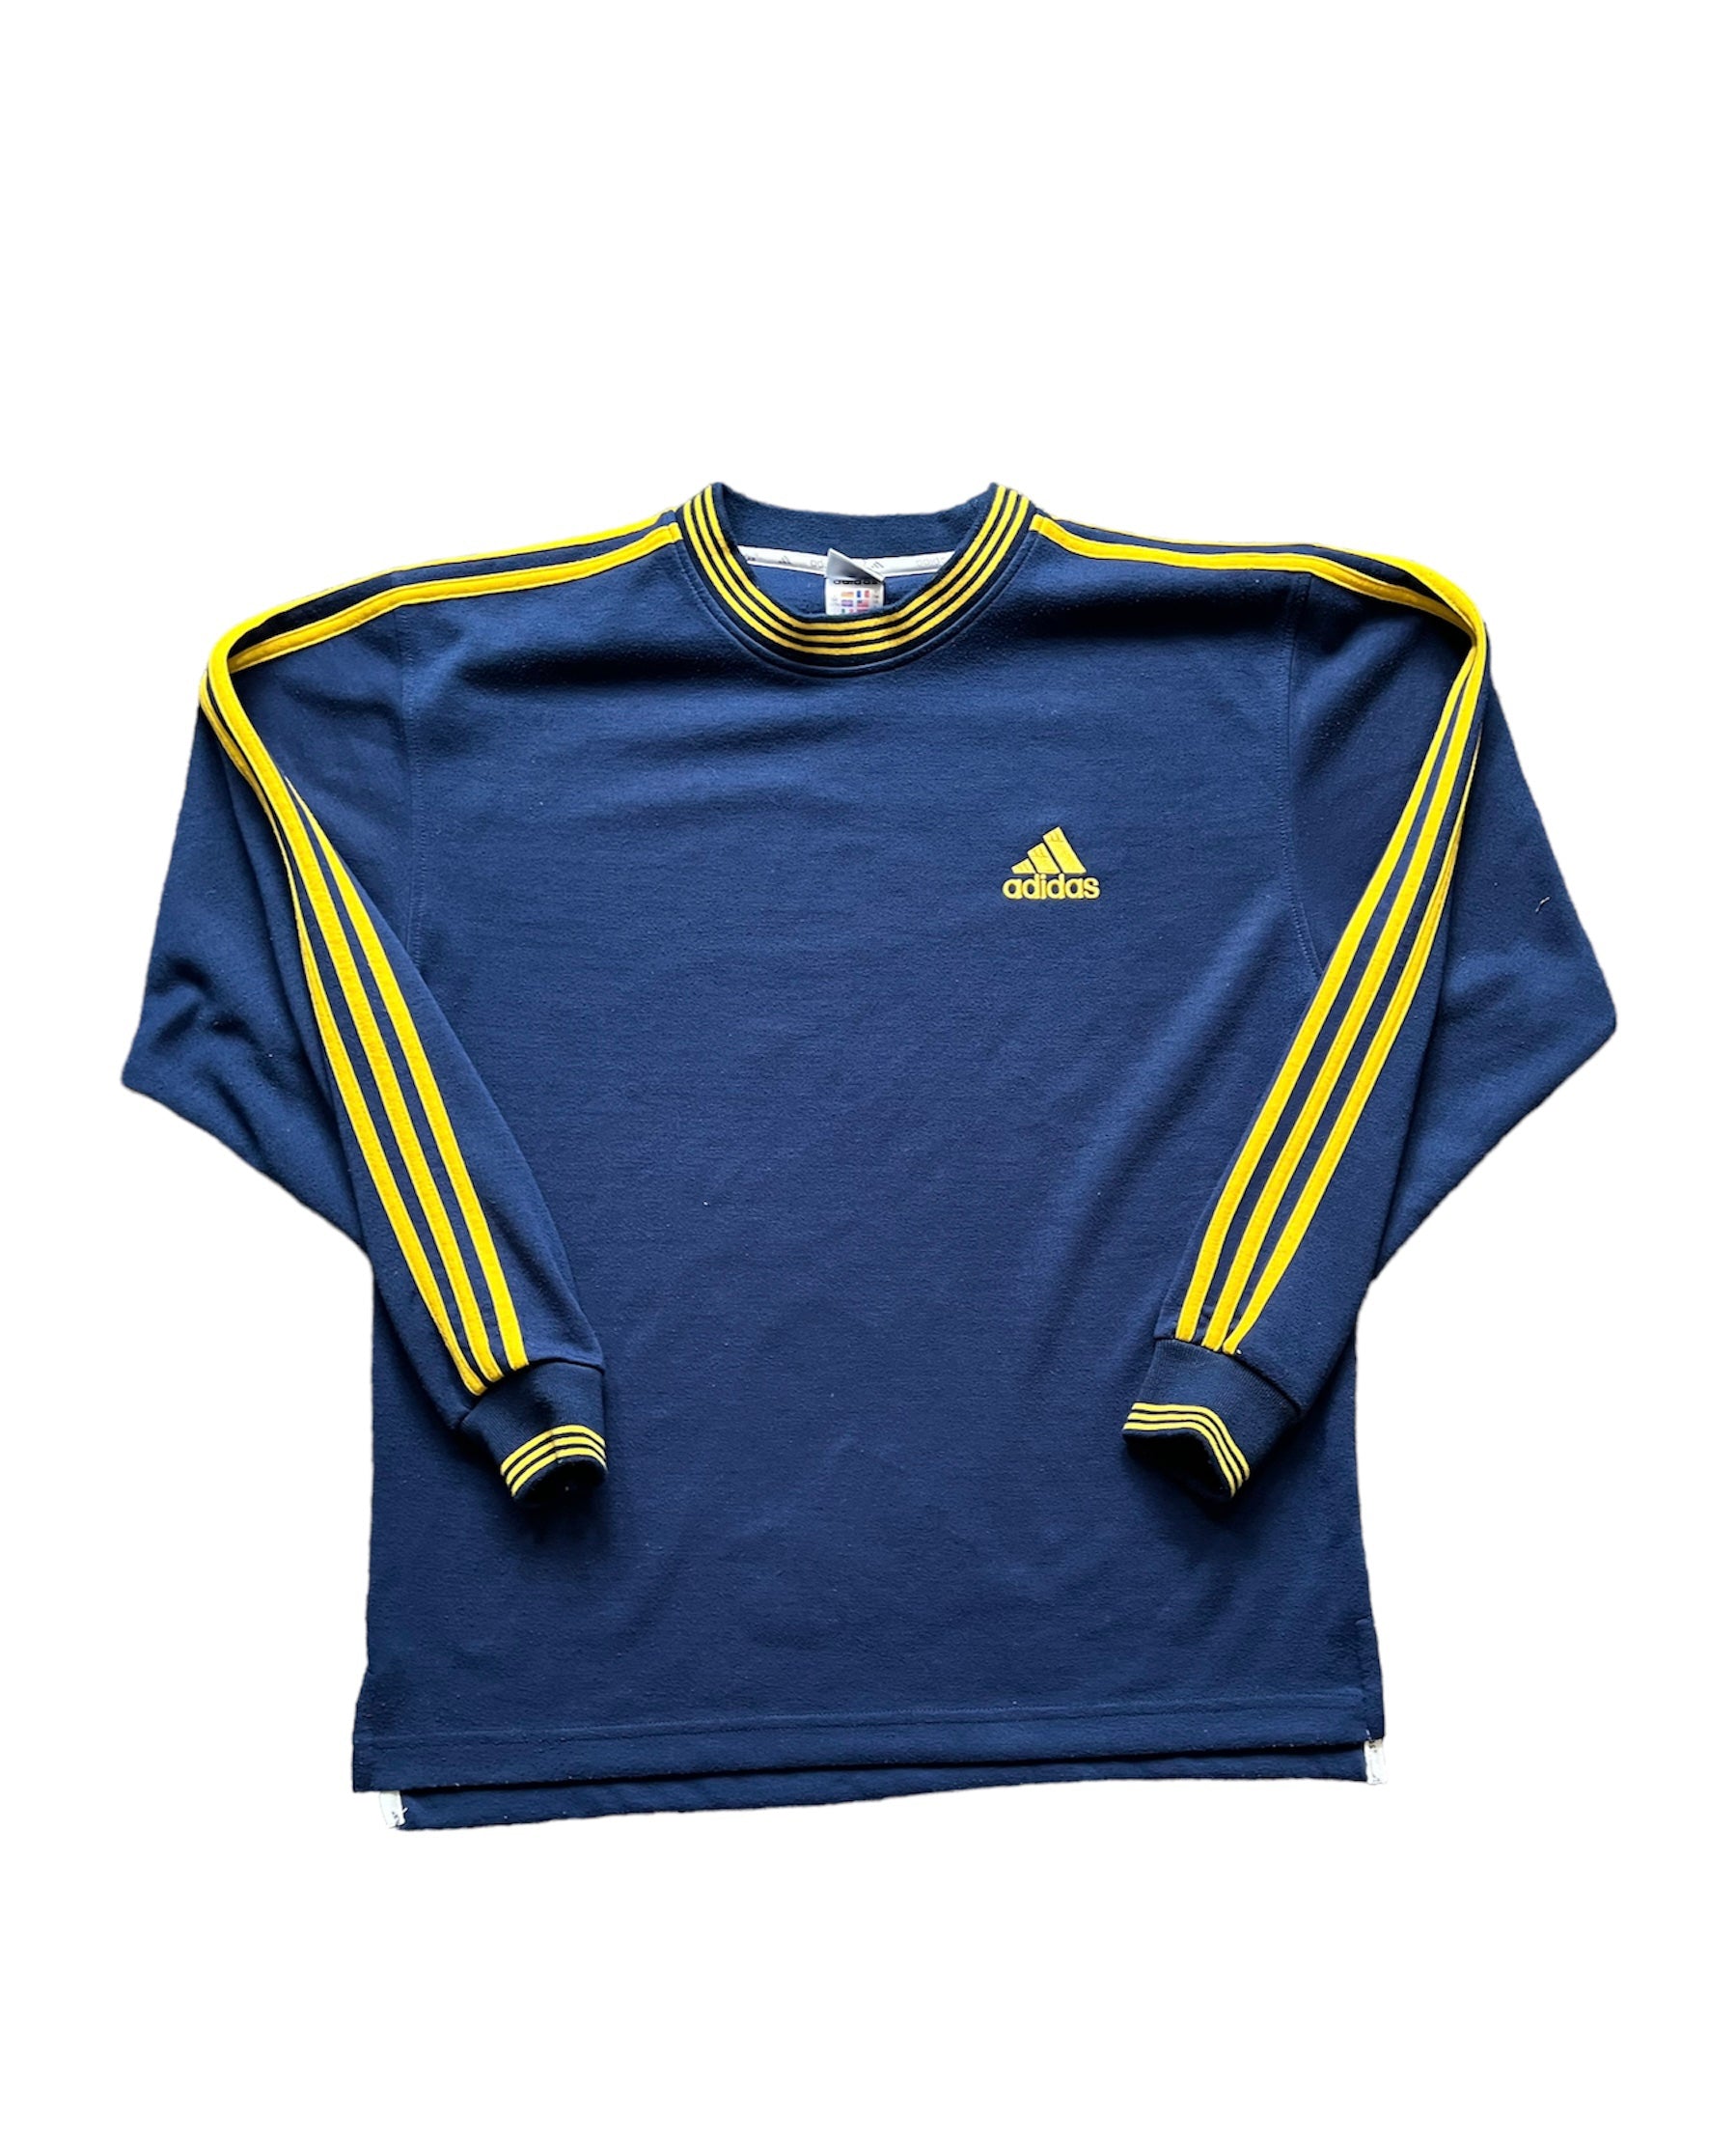 Vintage Adidas Sweatshirt (l) – scoopedstreetwear